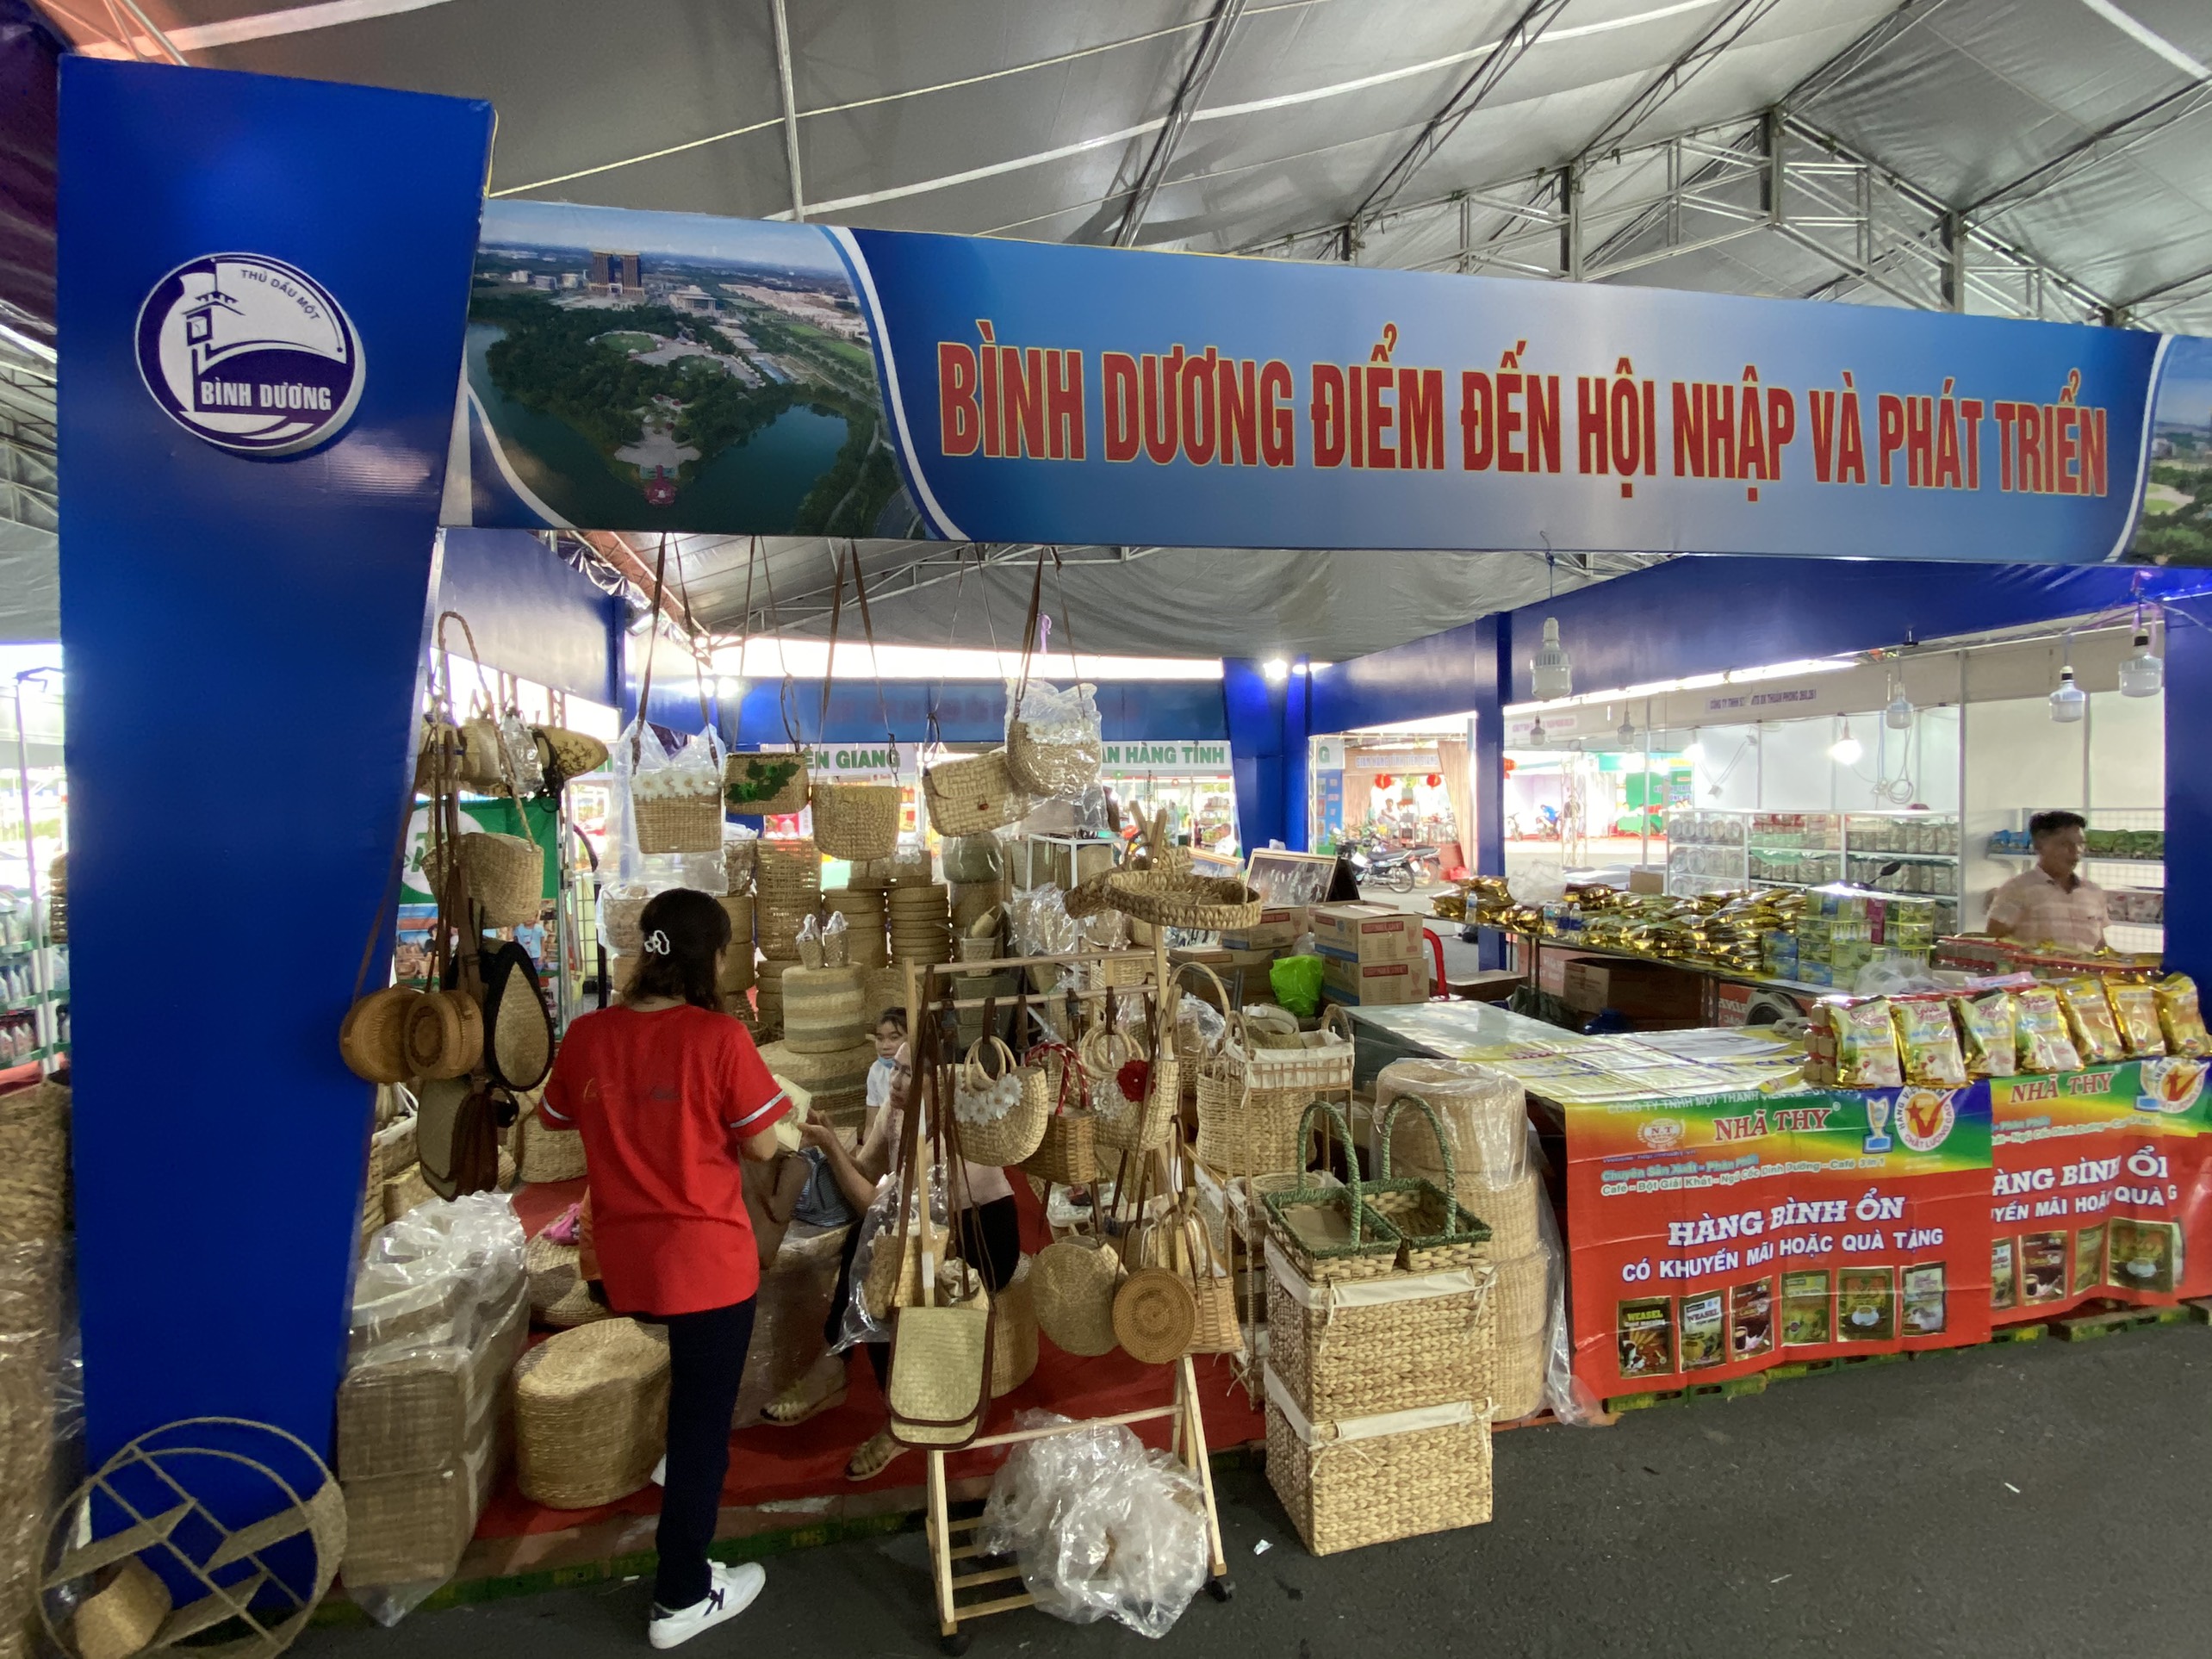 Bình Dương tham gia Hội chợ Triển lãm Công nghiệp, Thương mại Đồng bằng sông Cửu Long năm 2020